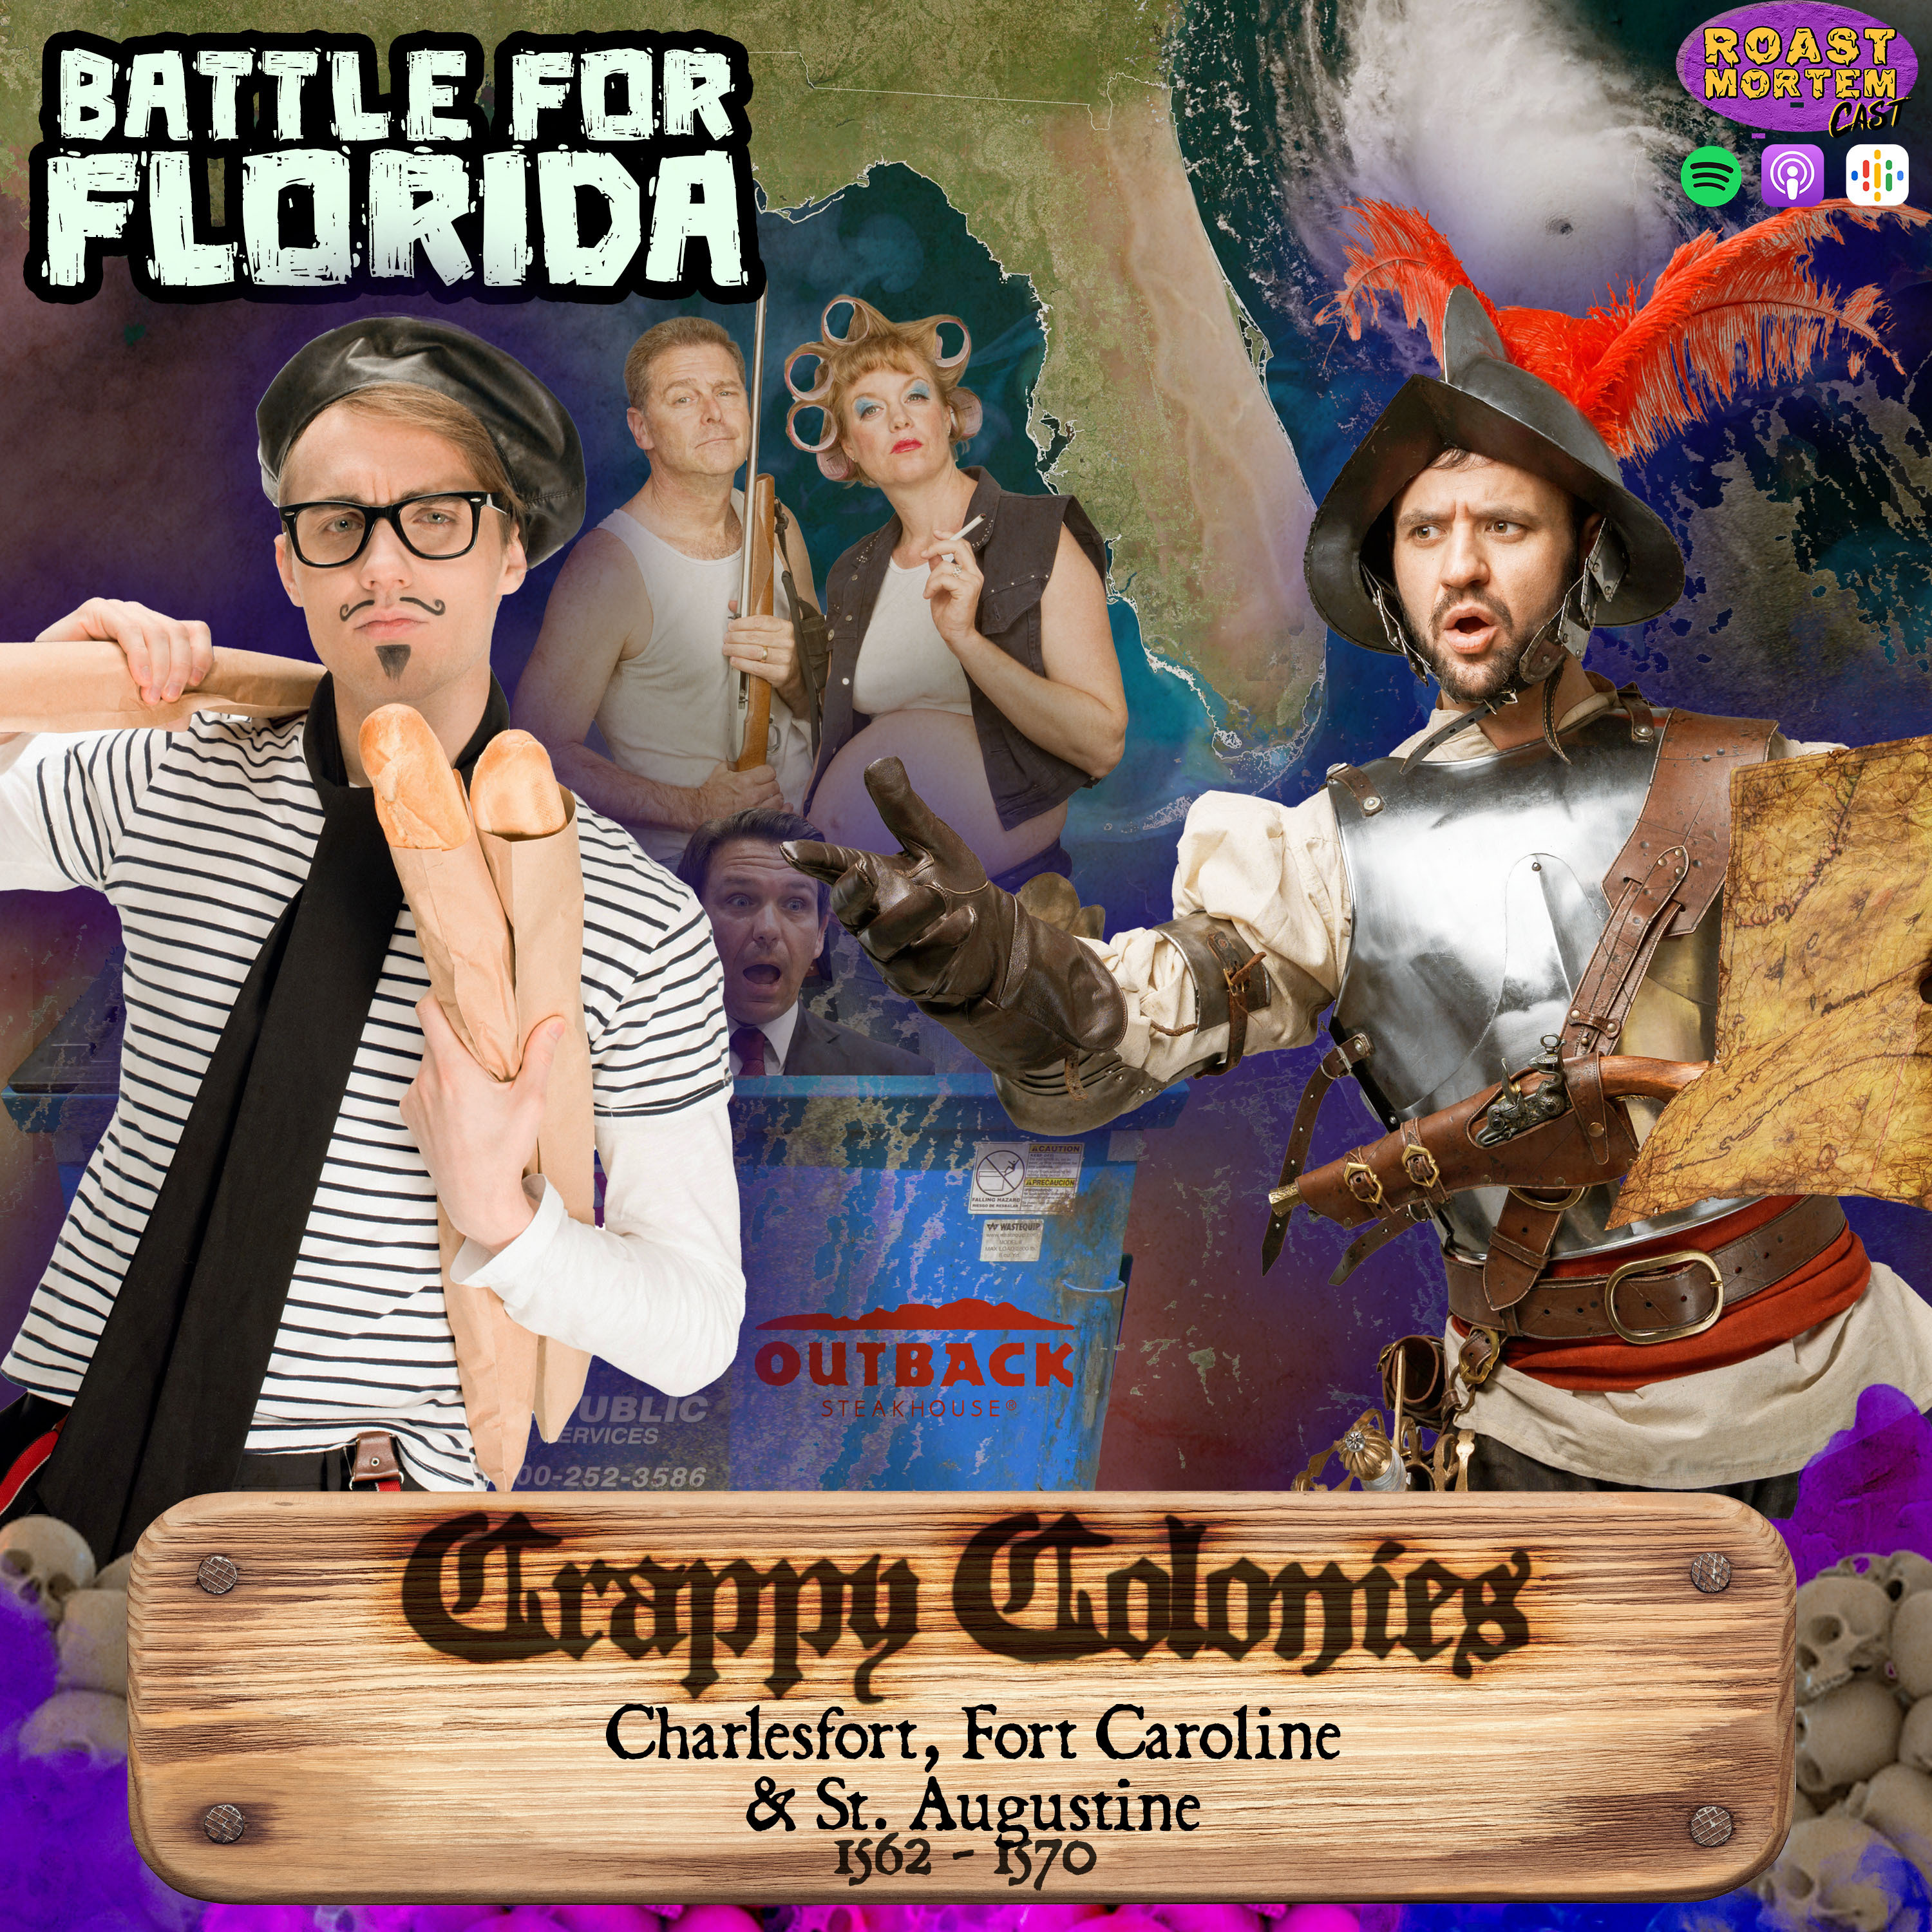 288 - Crappy Colonies: Charlesfort, Fort Caroline & St. Augustine